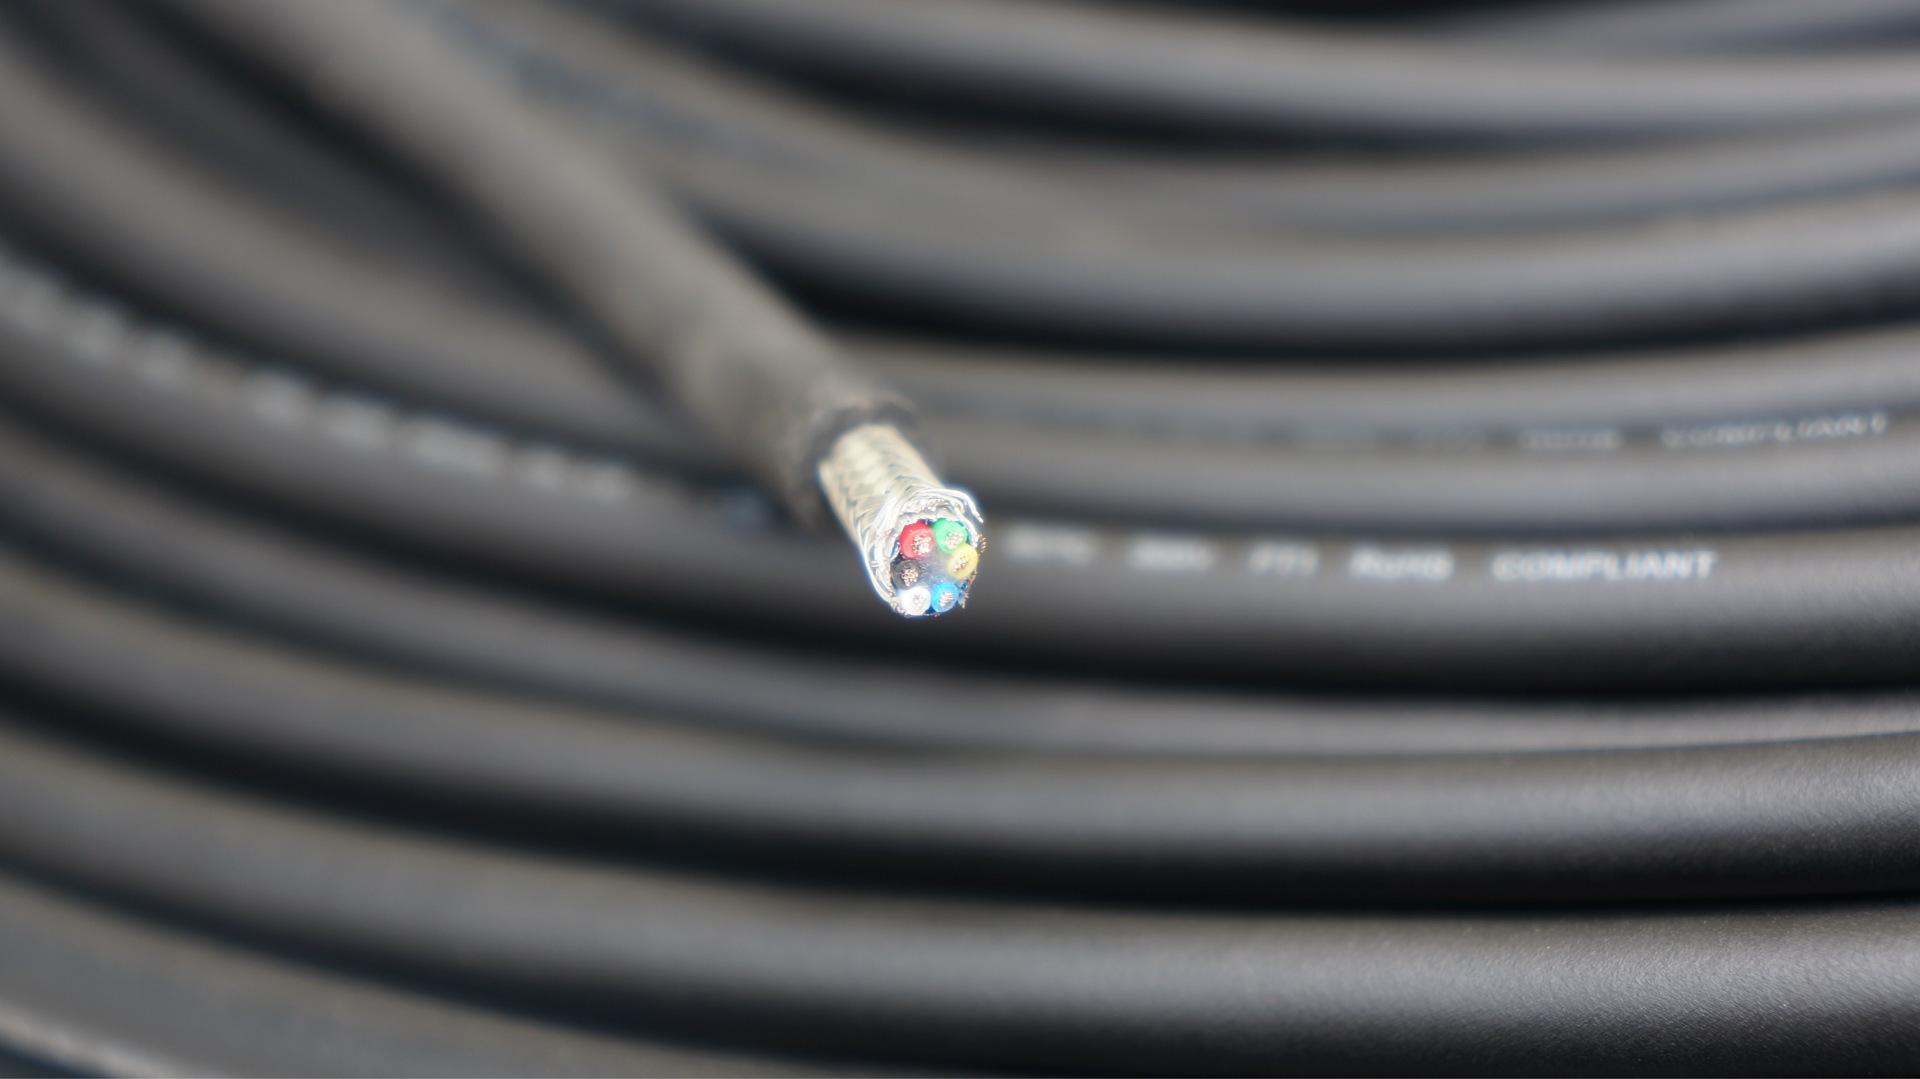 德国VDE标准工业电缆